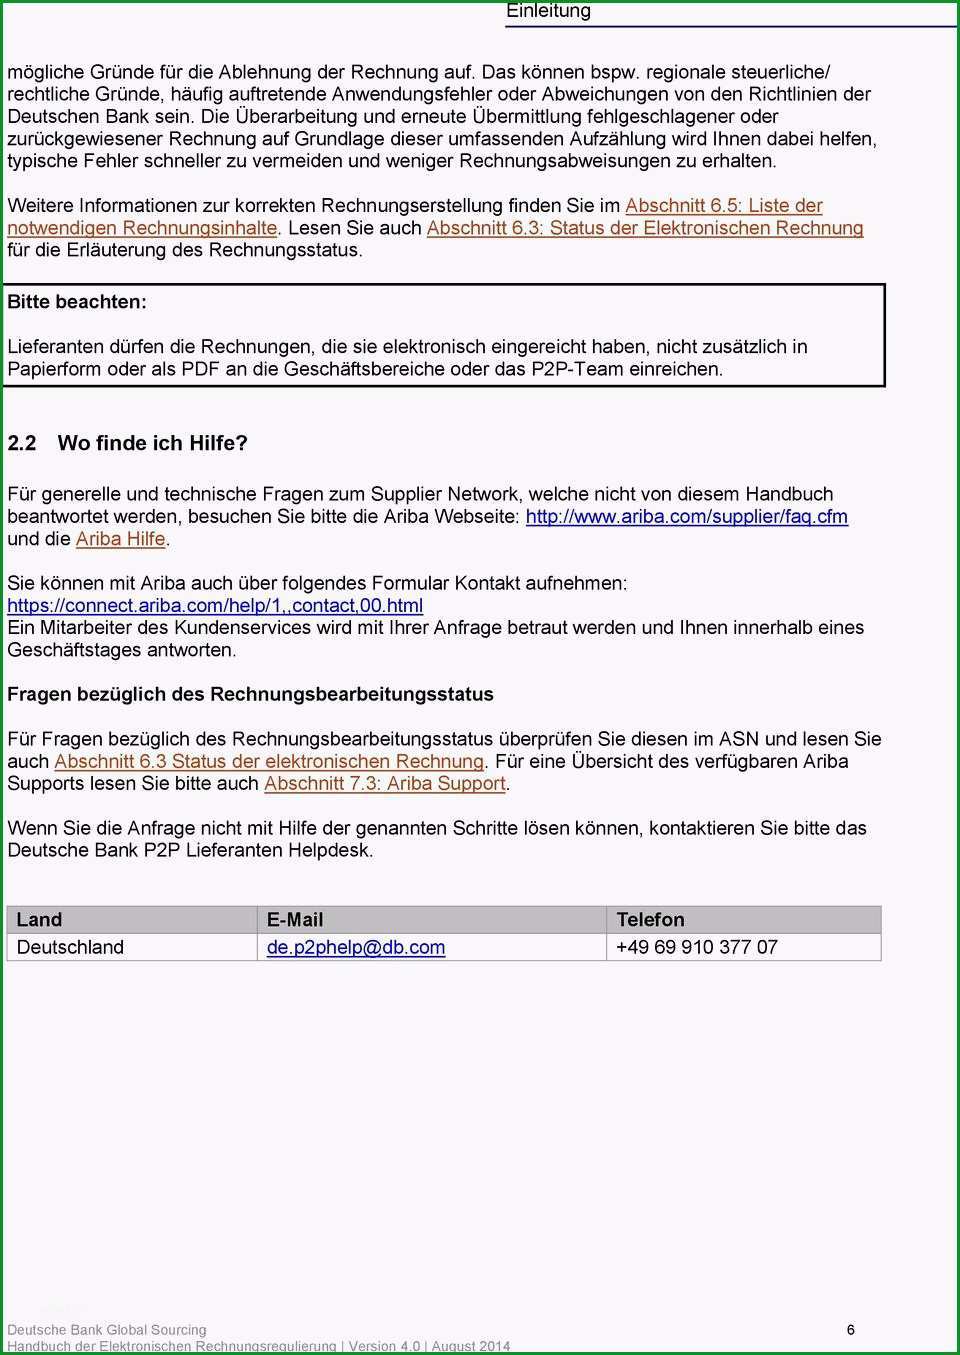 selbstauskunft deutsche bank formular pdf 1866